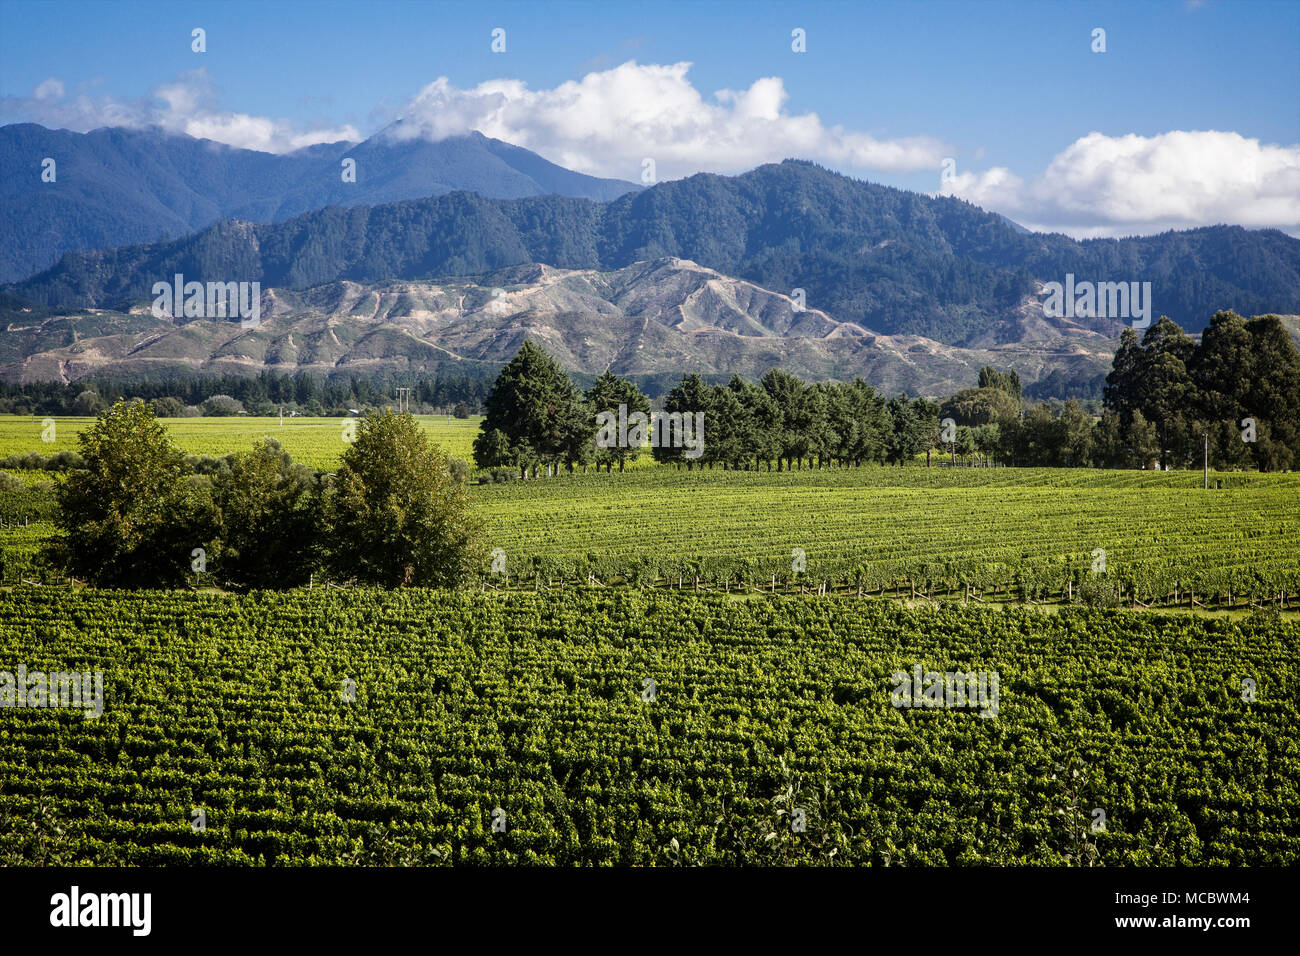 Los viñedos cubren una amplia zona de la región de Marlborough cerca Blenhiem, Isla del Sur, Nueva Zelanda. Foto de stock